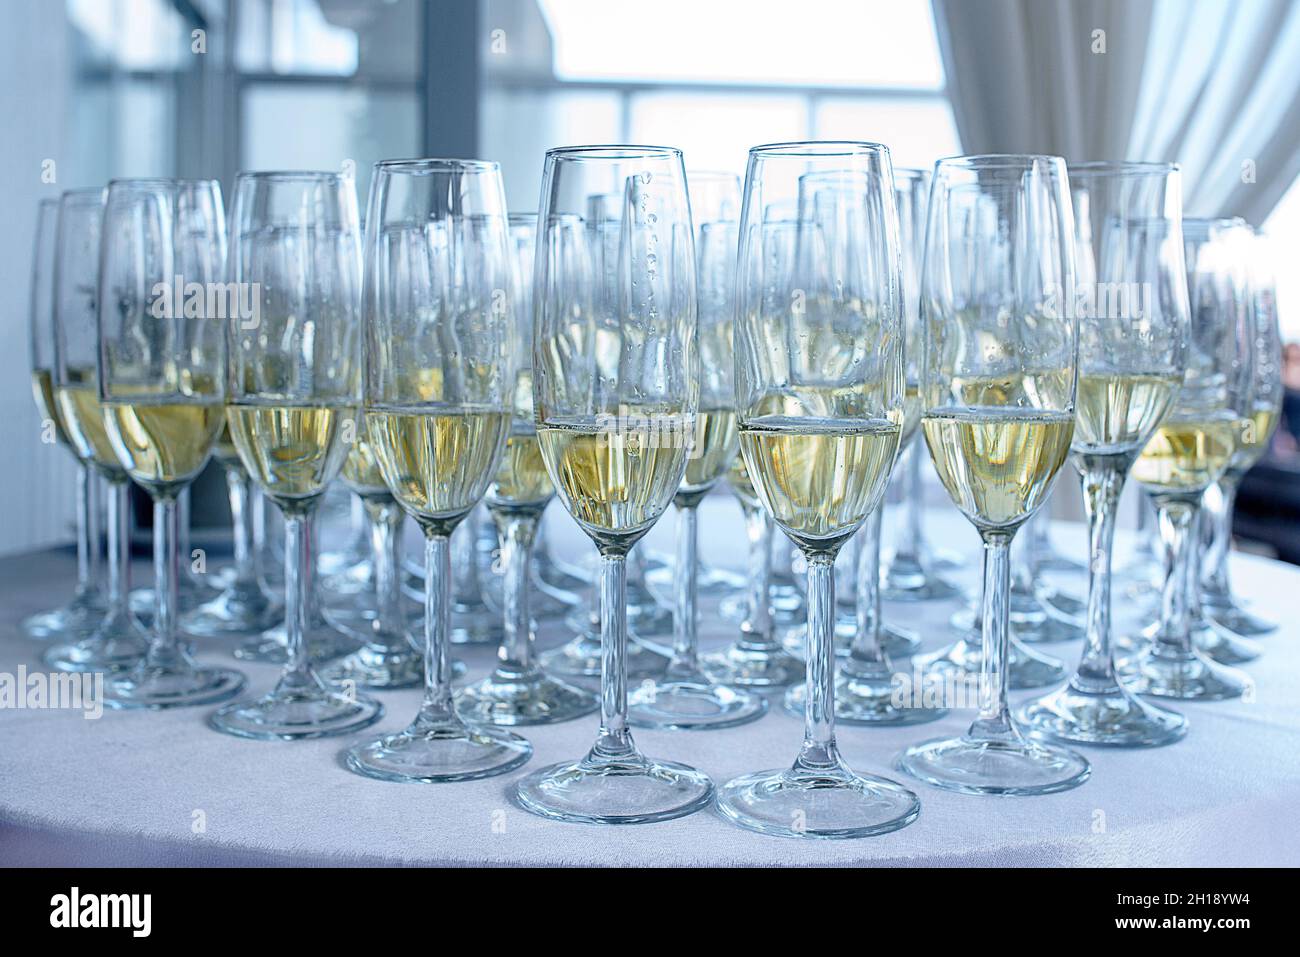 Champagner oder Sekt in langen Gläsern auf einem weißen Tisch, einem typischen Getränk, das zur Feier von Hochzeiten oder Geburtstagsfeiern verwendet wird Stockfoto